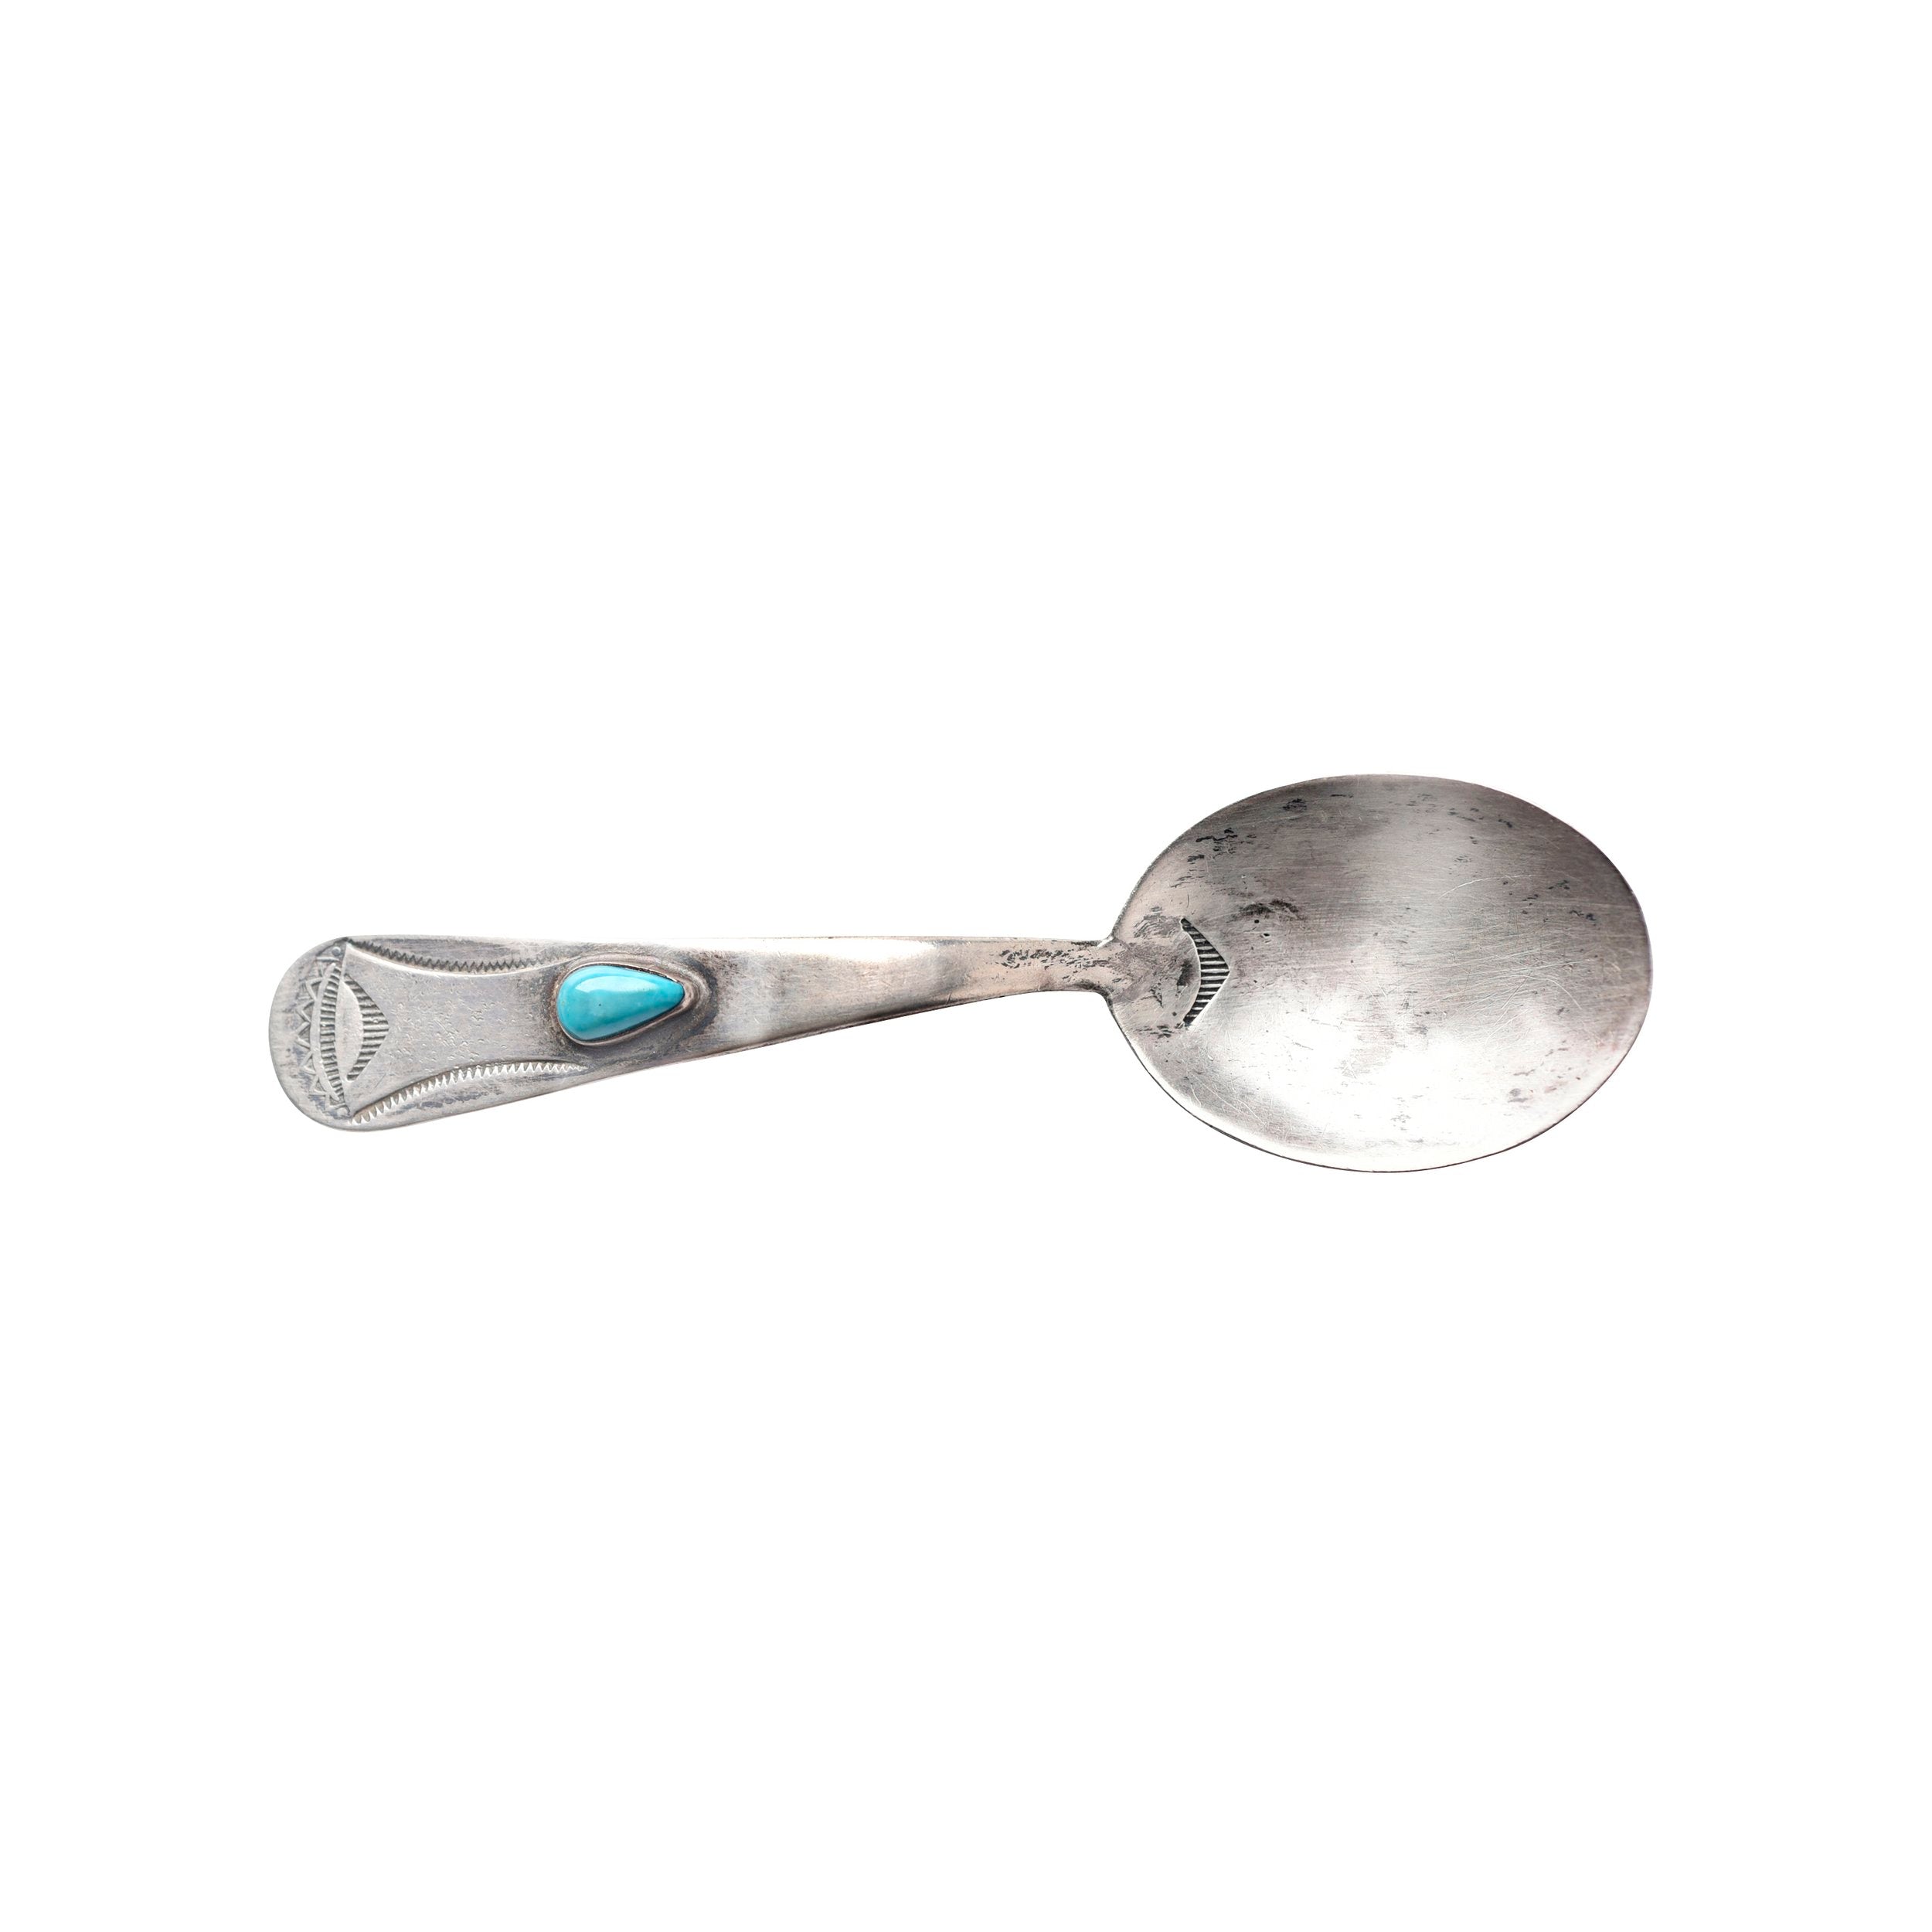 Vintage Navajo Spoon, c. 1950